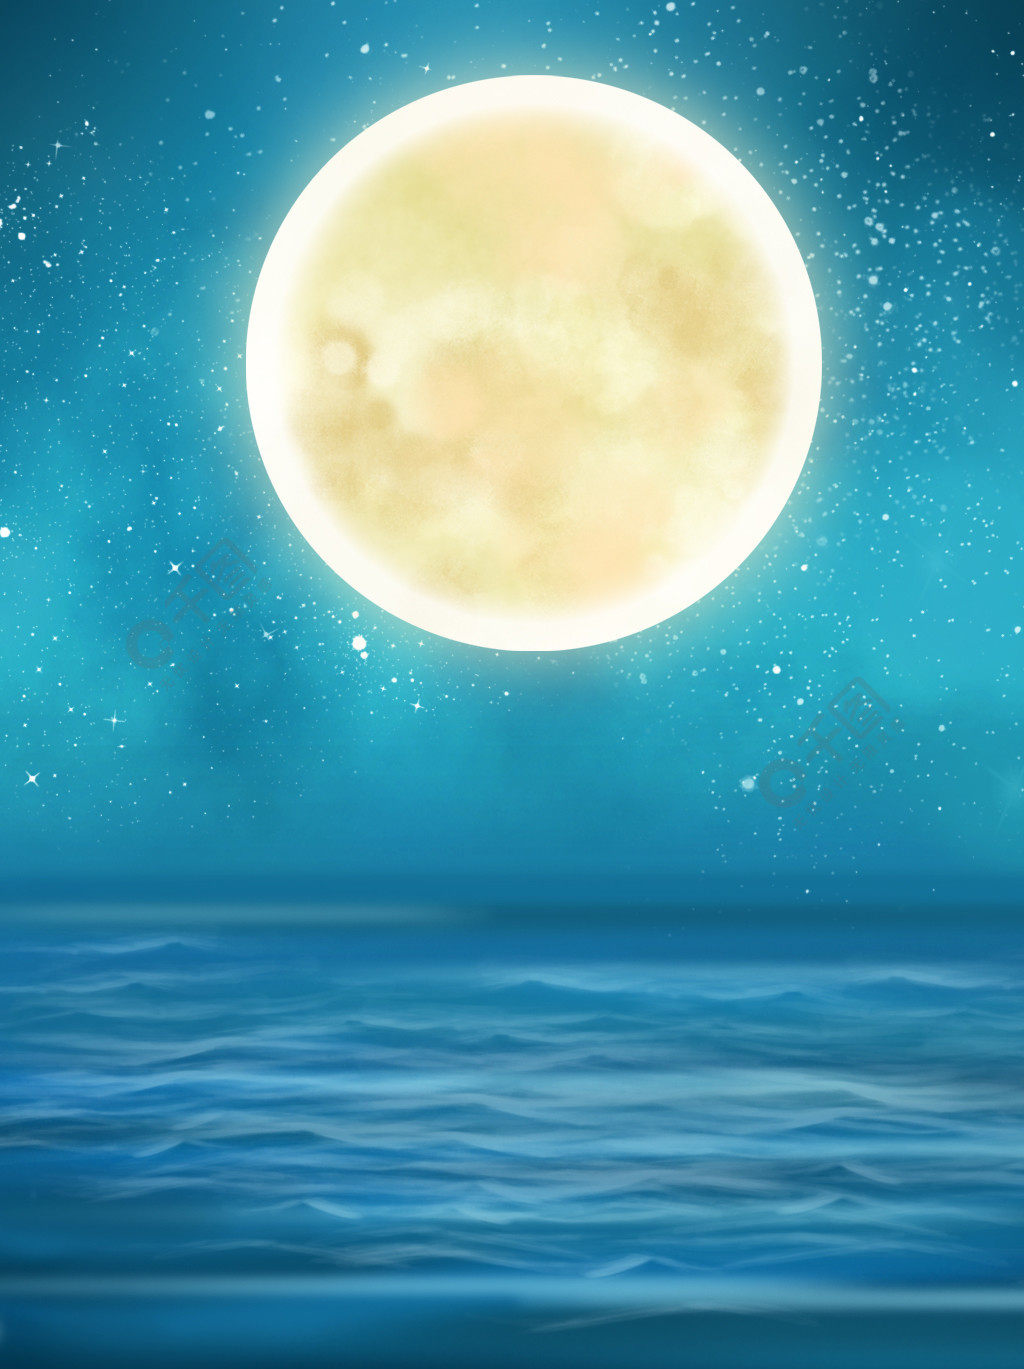 原创手绘夜晚海边中秋月亮背景场景素材